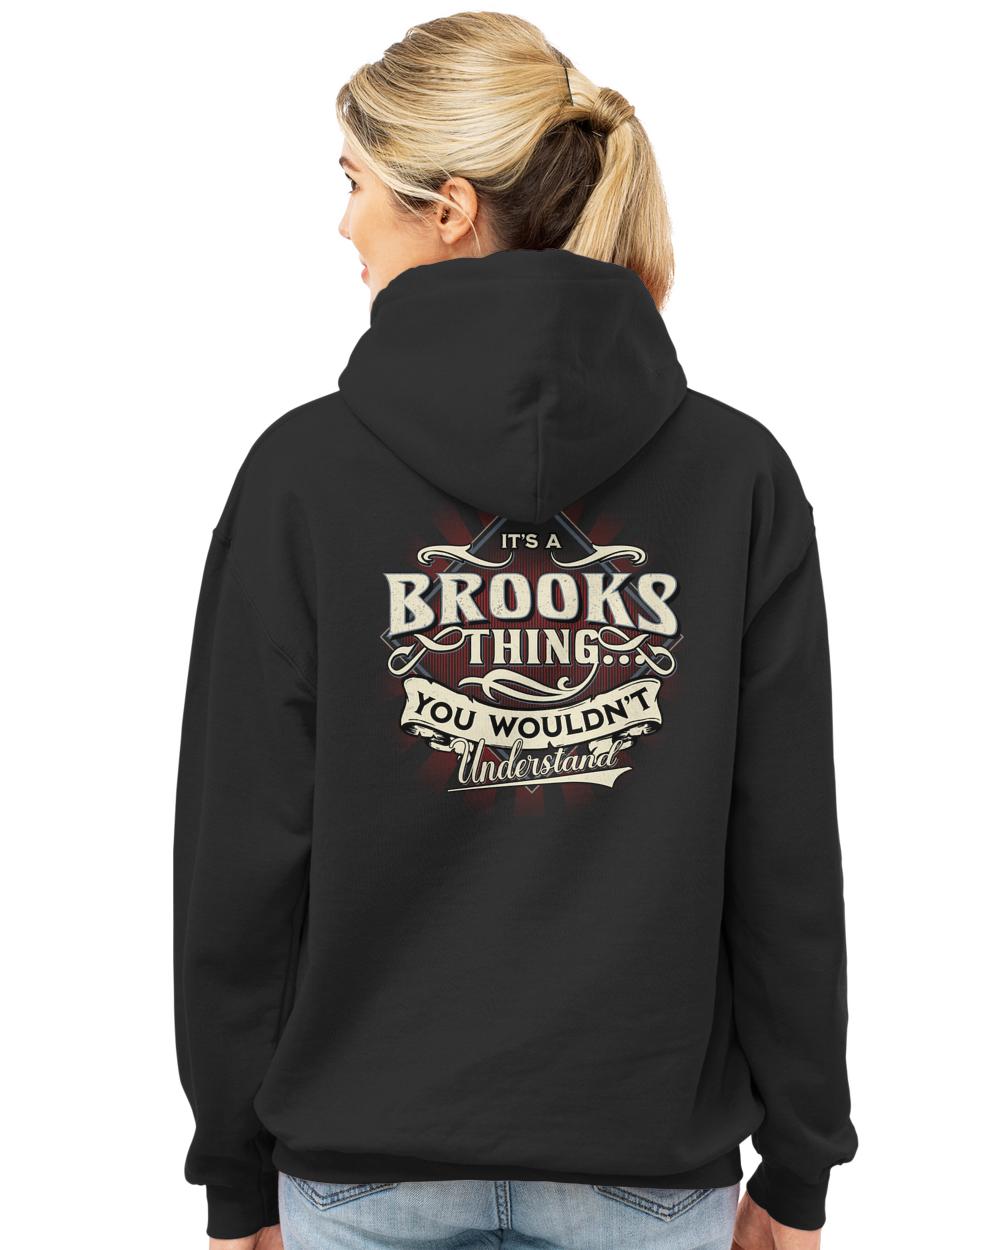 BROOKS-13K-44-01